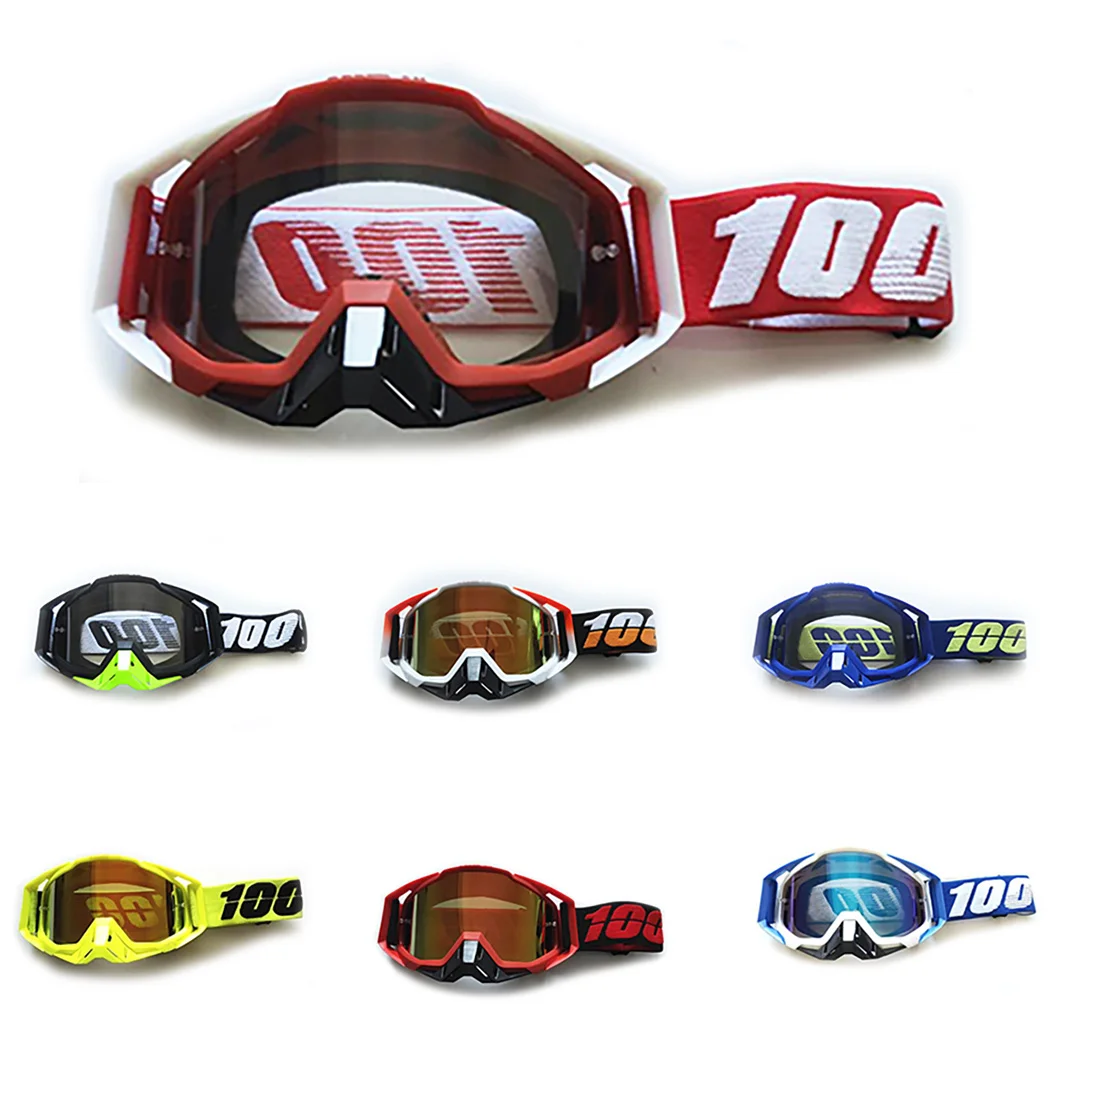 

Мотоциклетные очки, очки для езды на мотоцикле, очки для мотокросса, защитные очки для гоночного шлема, защитные очки для езды на велосипеде ...